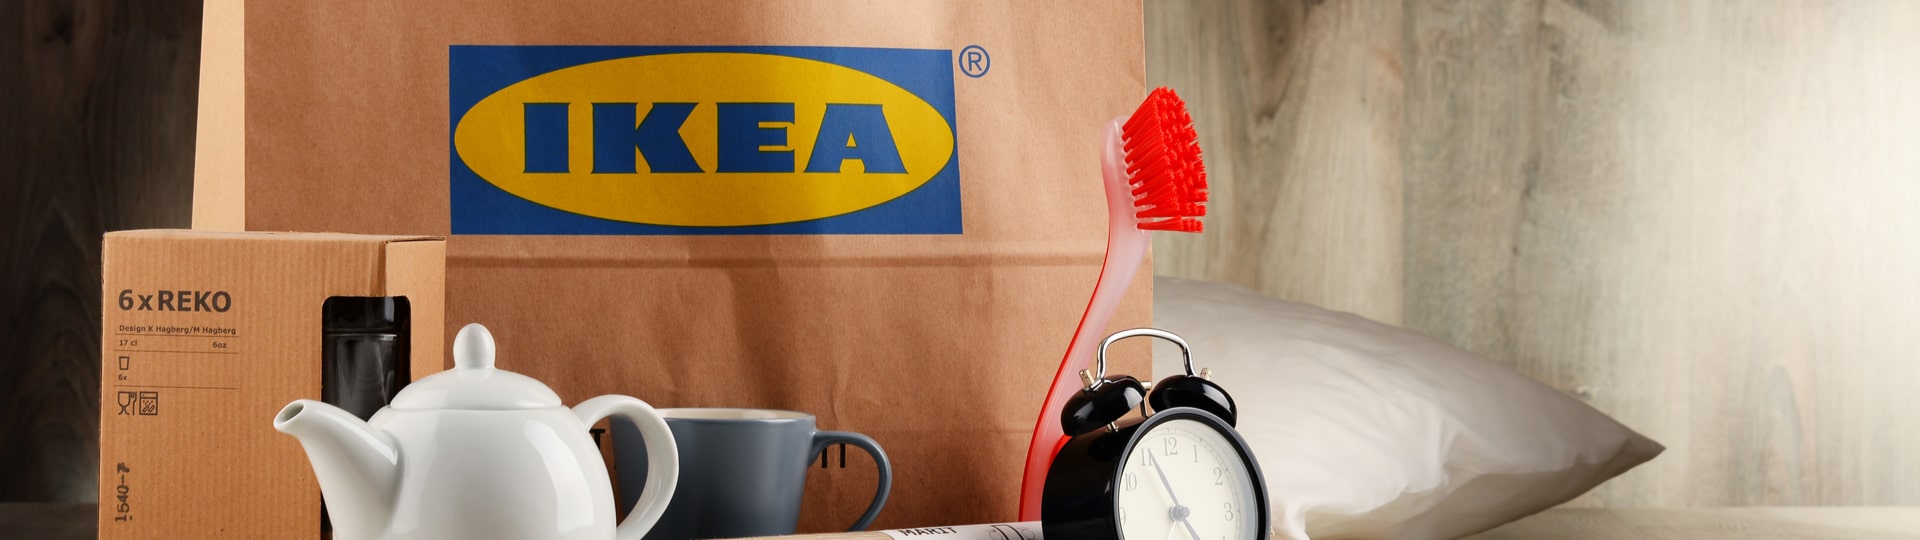 IKEA zkouší nový formát prodejen, který obstojí v éře on-line nákupů